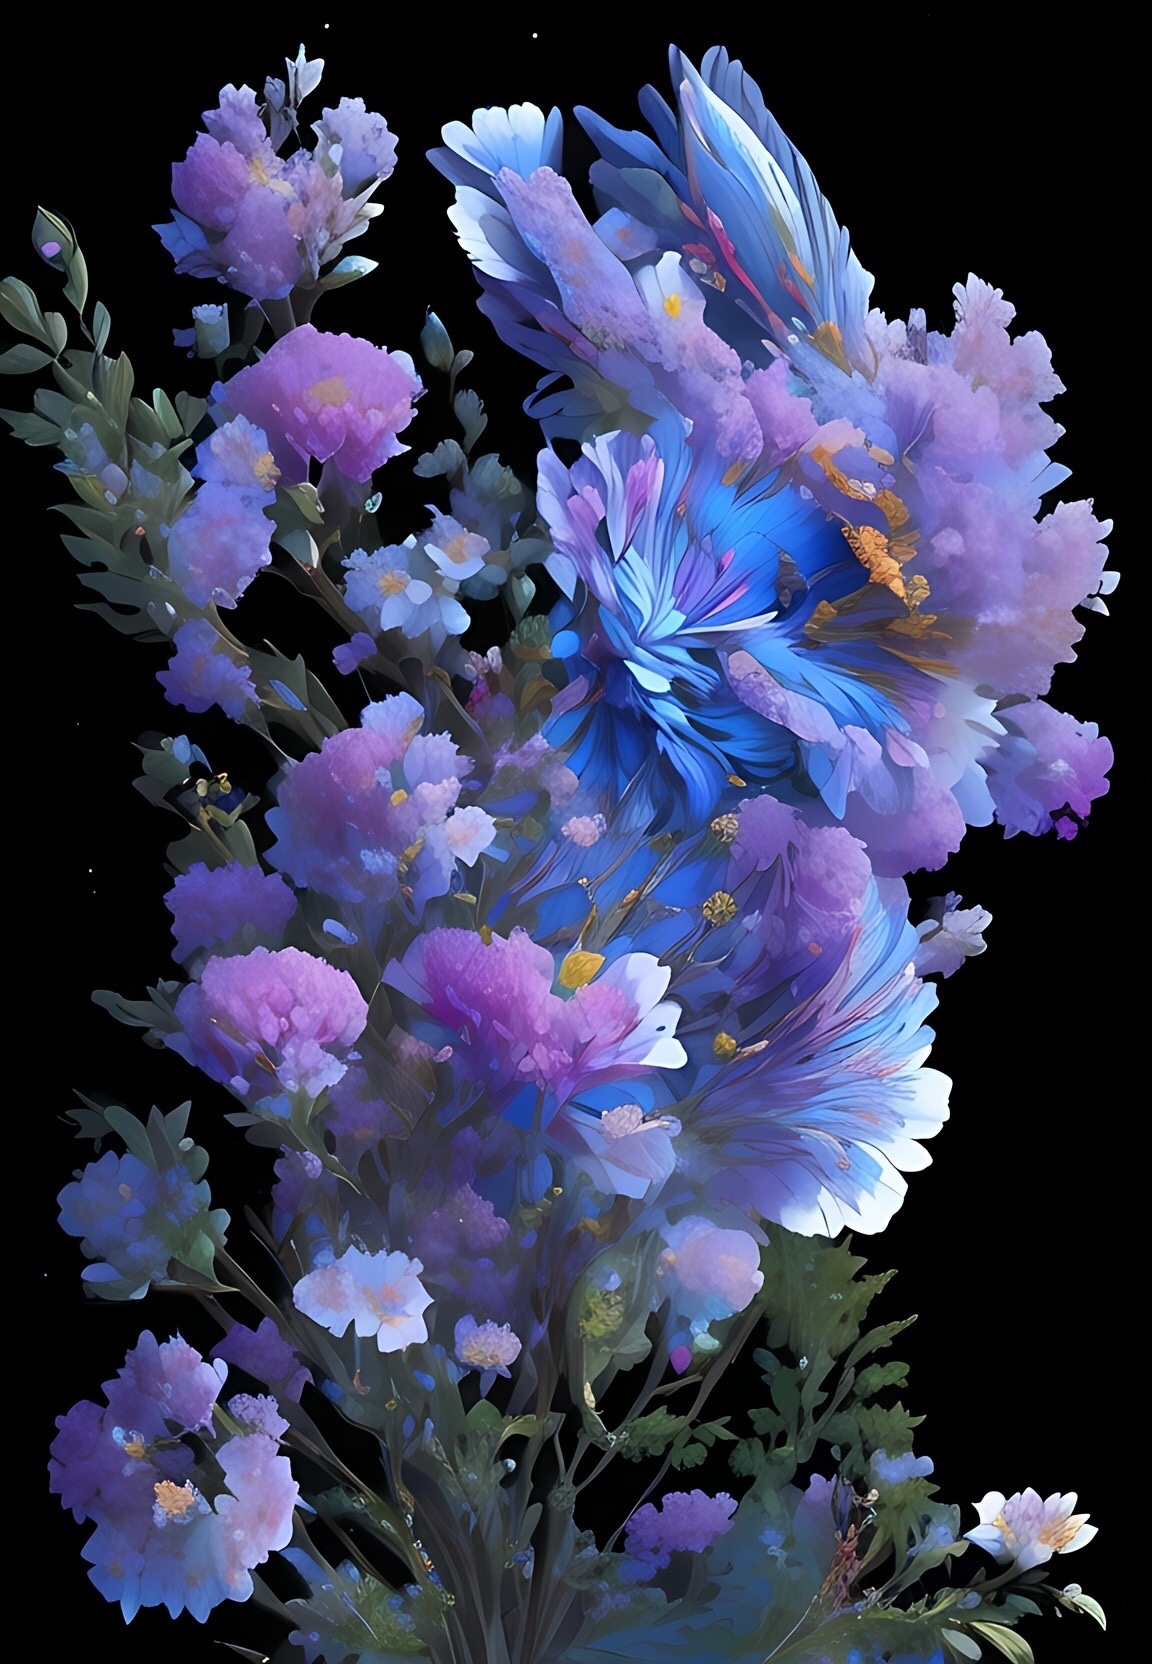 花朵紫色浪漫鲜艳图片